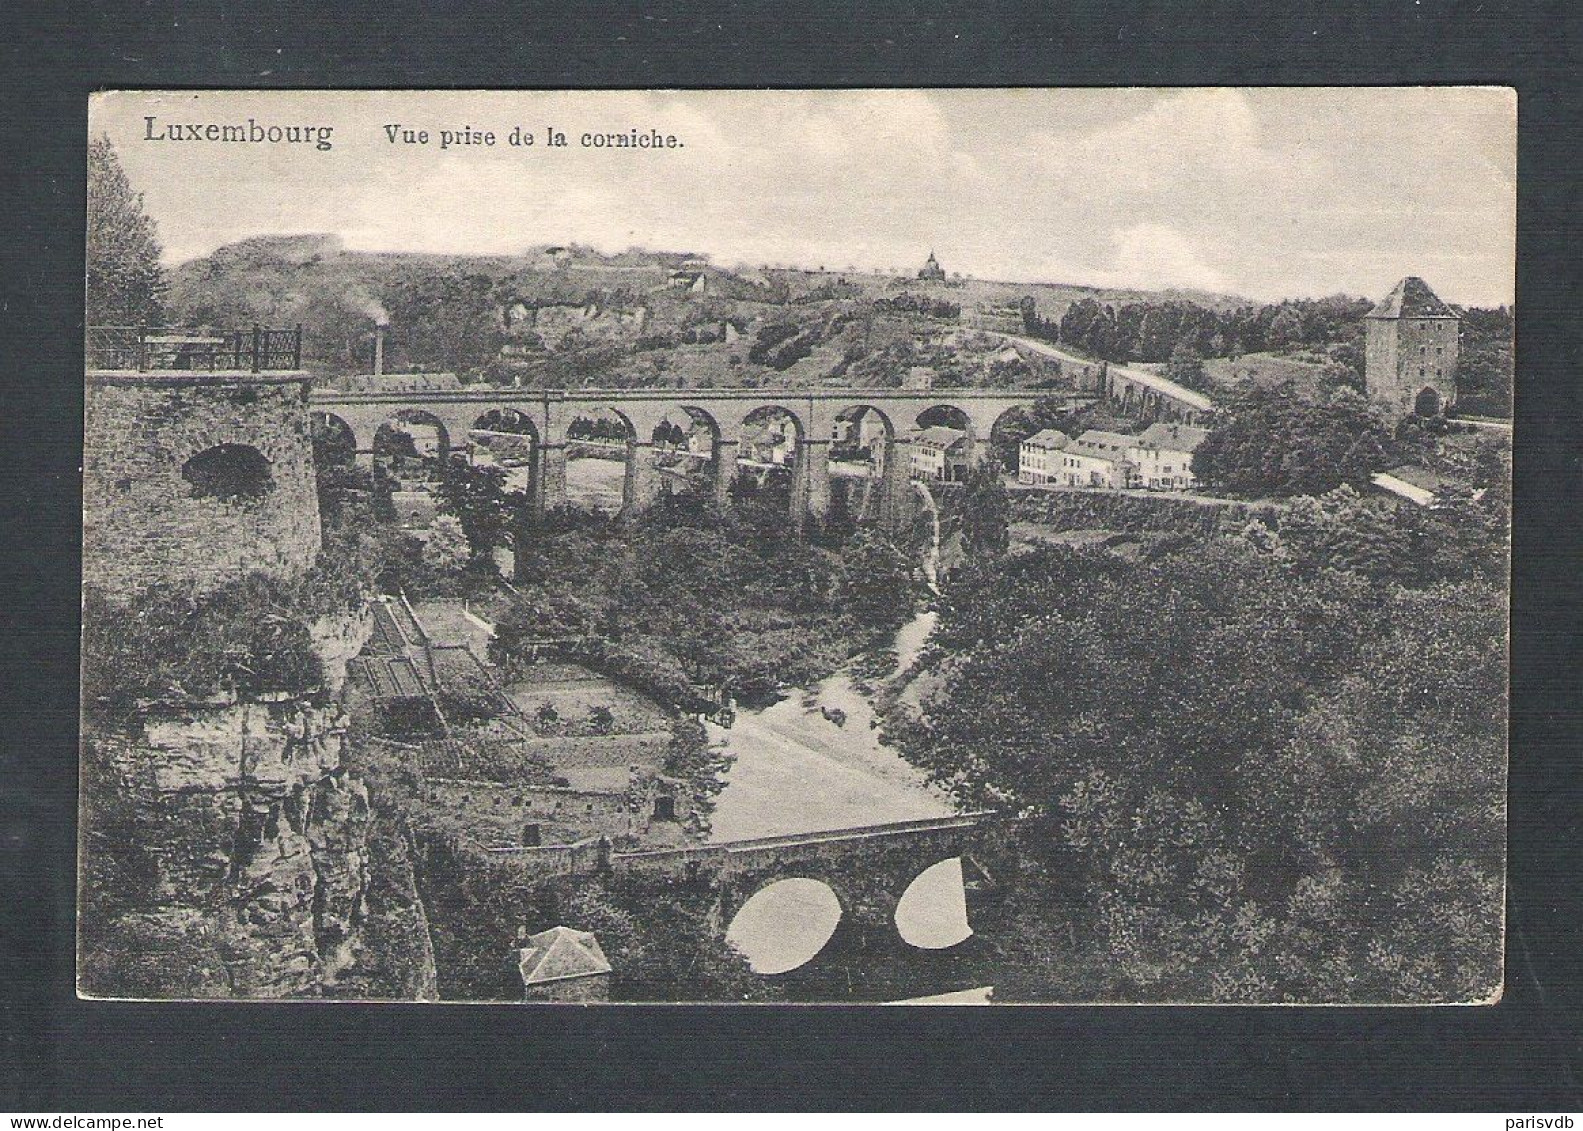 LUXEMBOURG - VUE PRISE DE LA CORNICHE - 1921  (14.289) - Luxemburgo - Ciudad